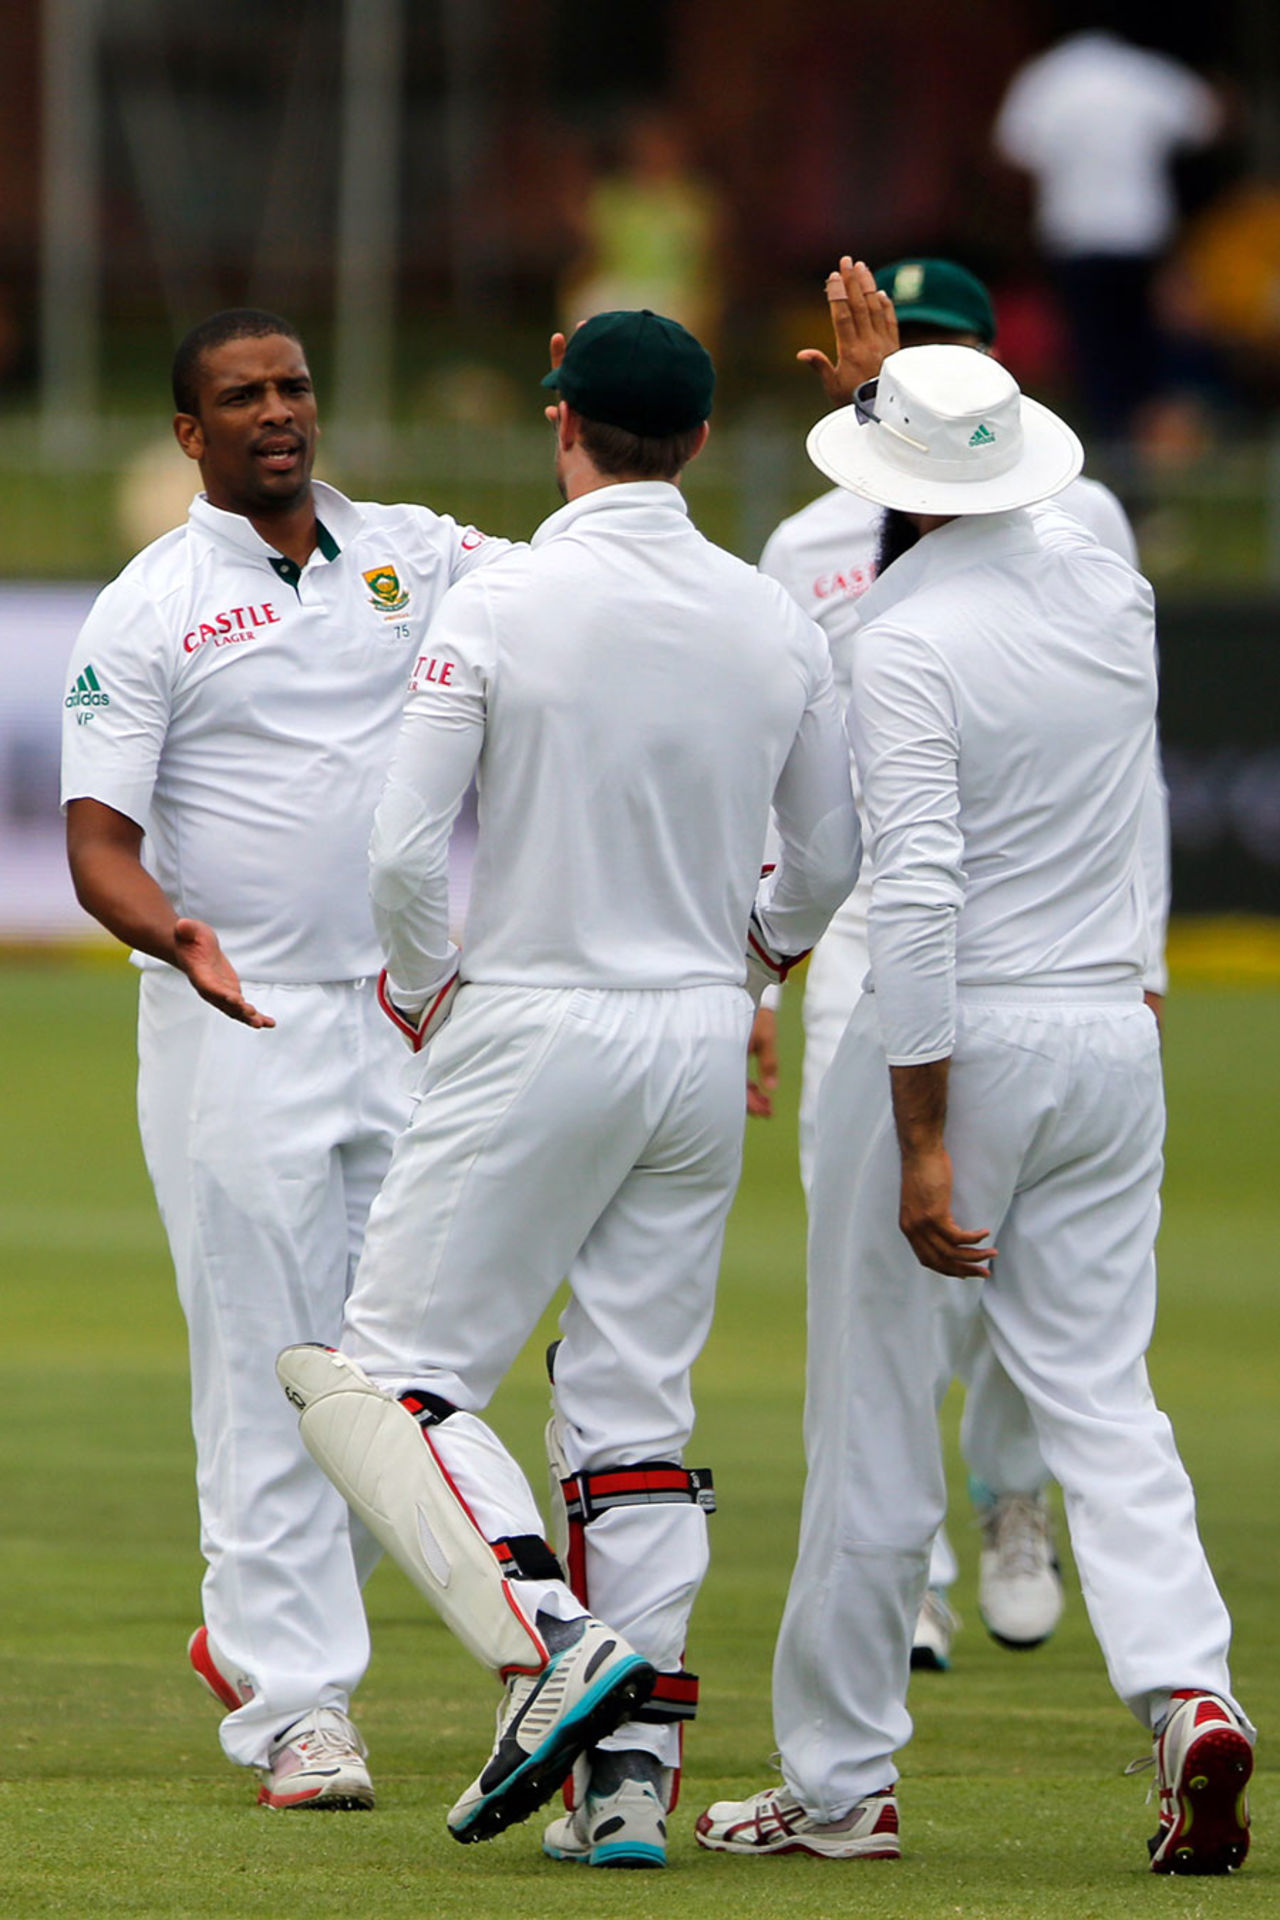 South Africa celebrate after Vernon Philander dismisses Marlon Samuels, South Africa v West Indies, 2nd Test, Port Elizabeth, 4th day, December 29, 2014